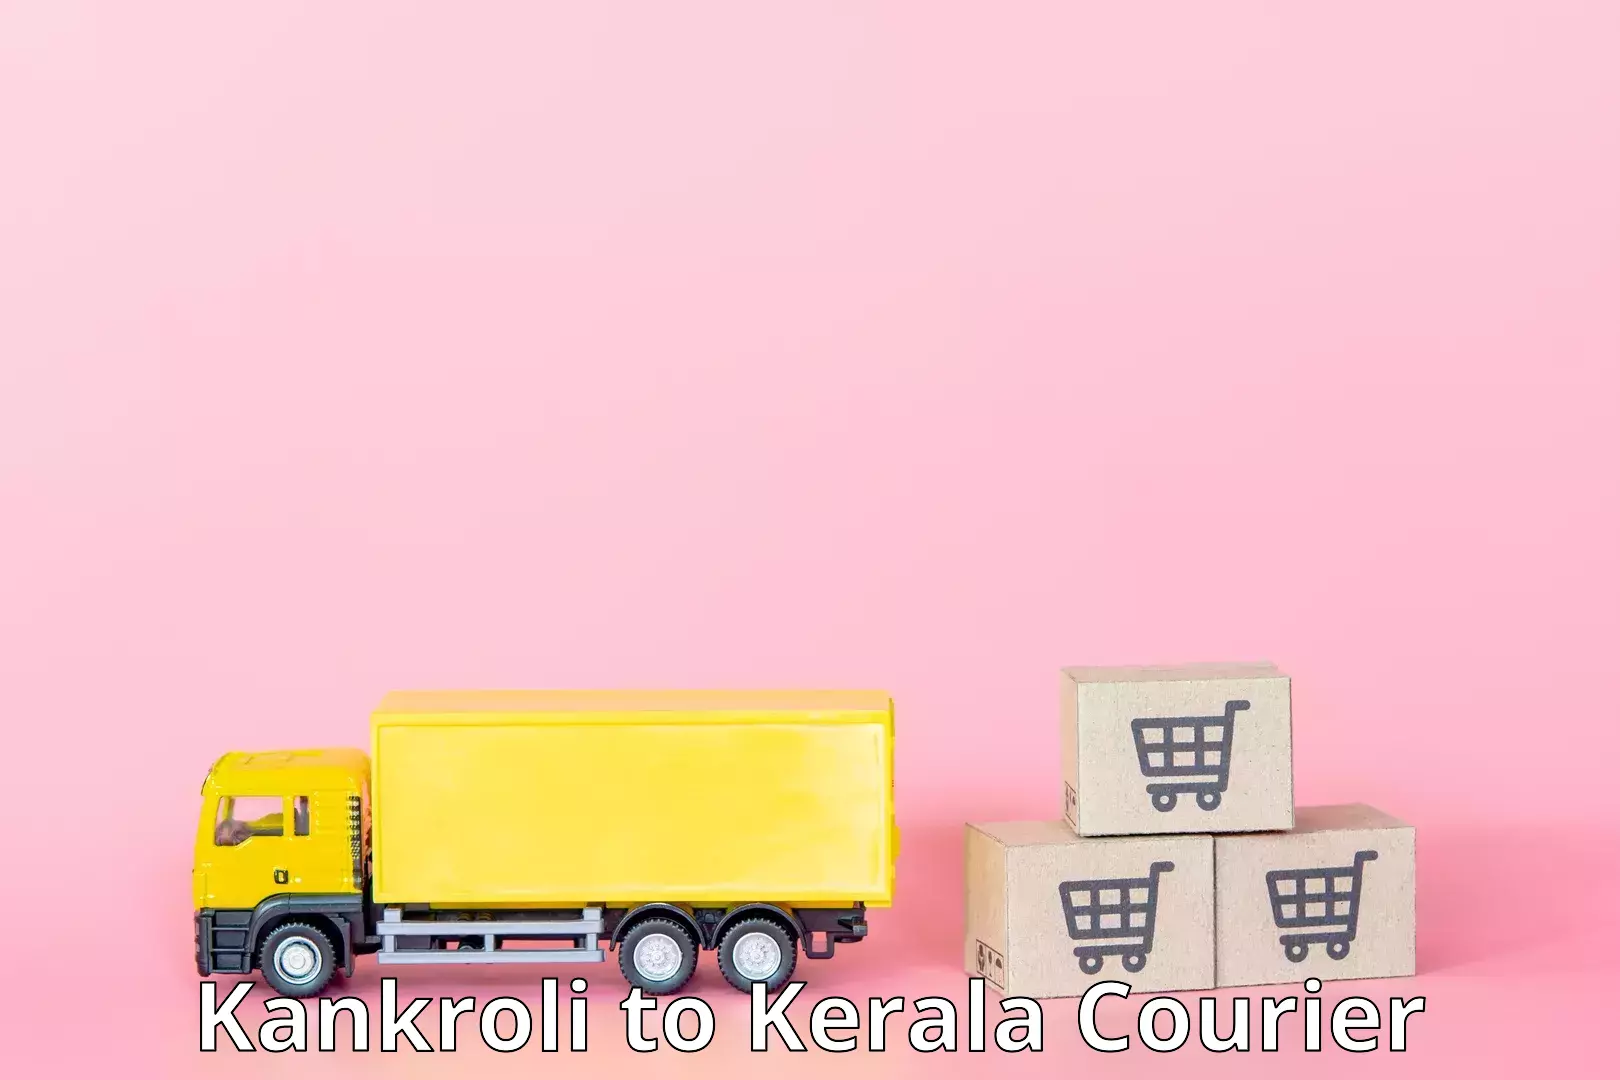 Tech-enabled shipping Kankroli to Perambra